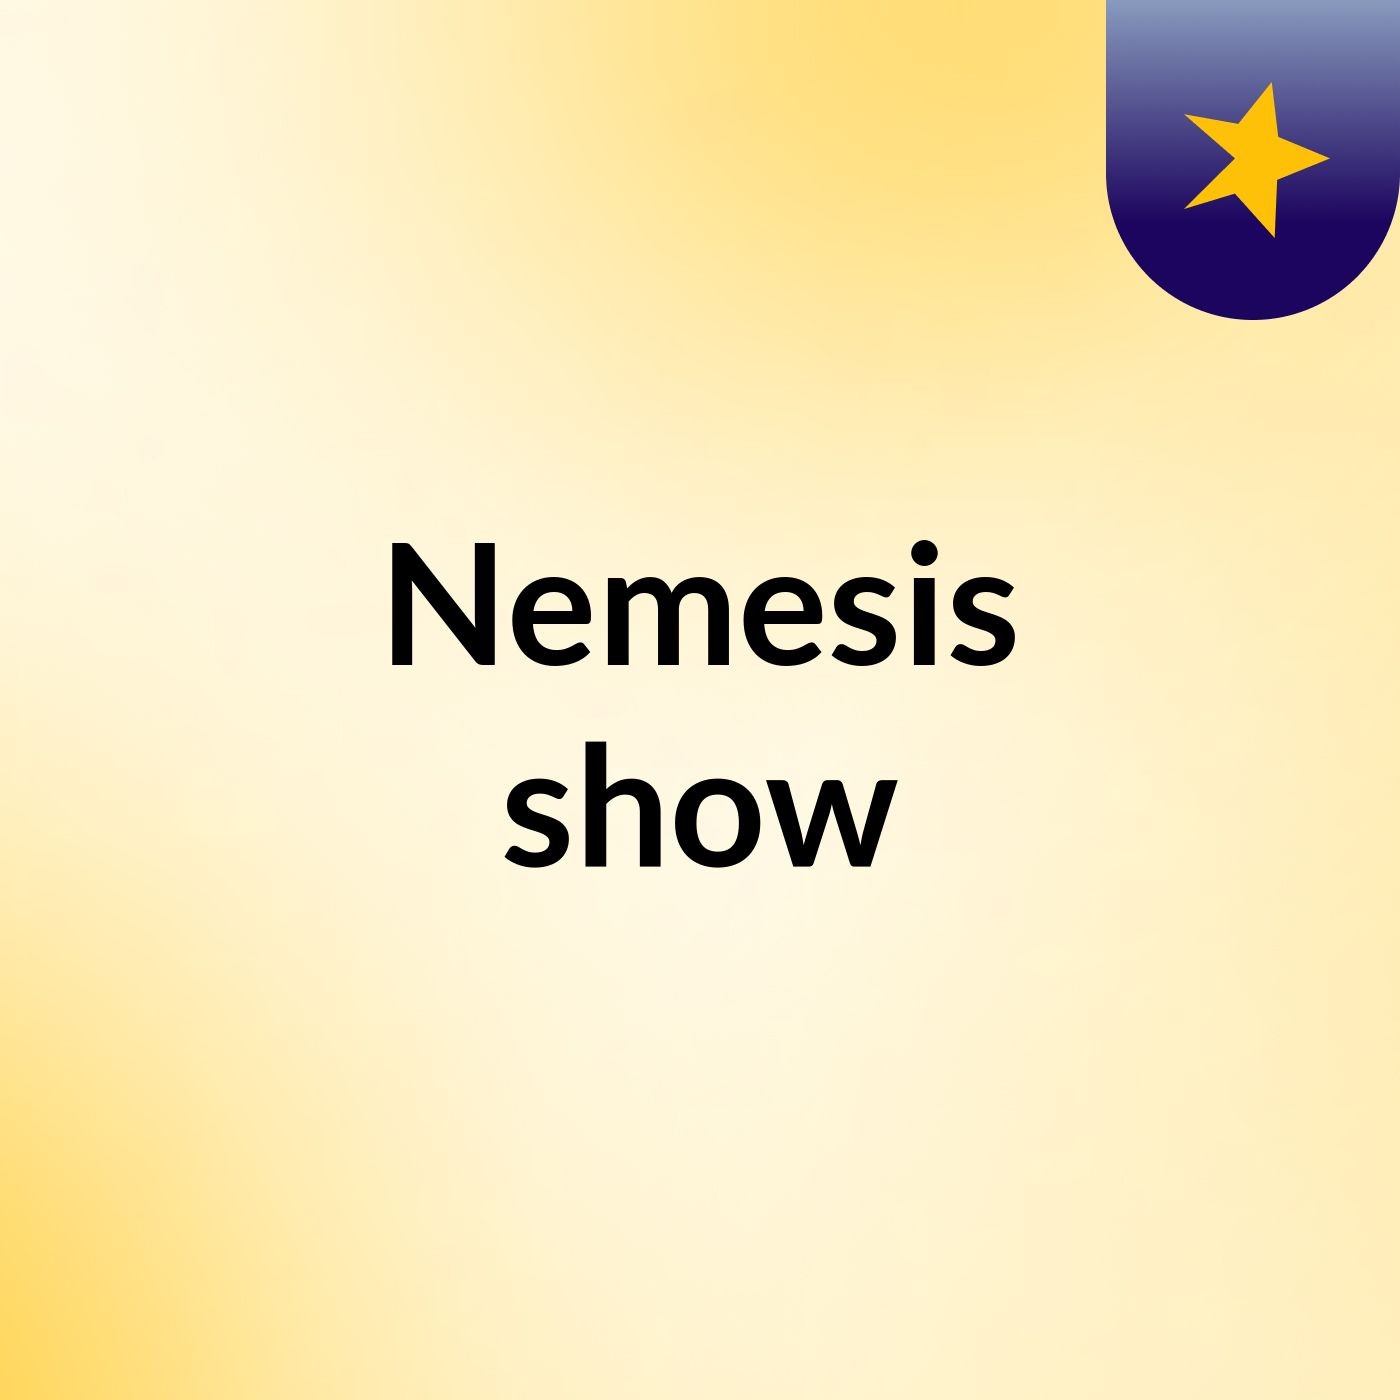 Nemesis show